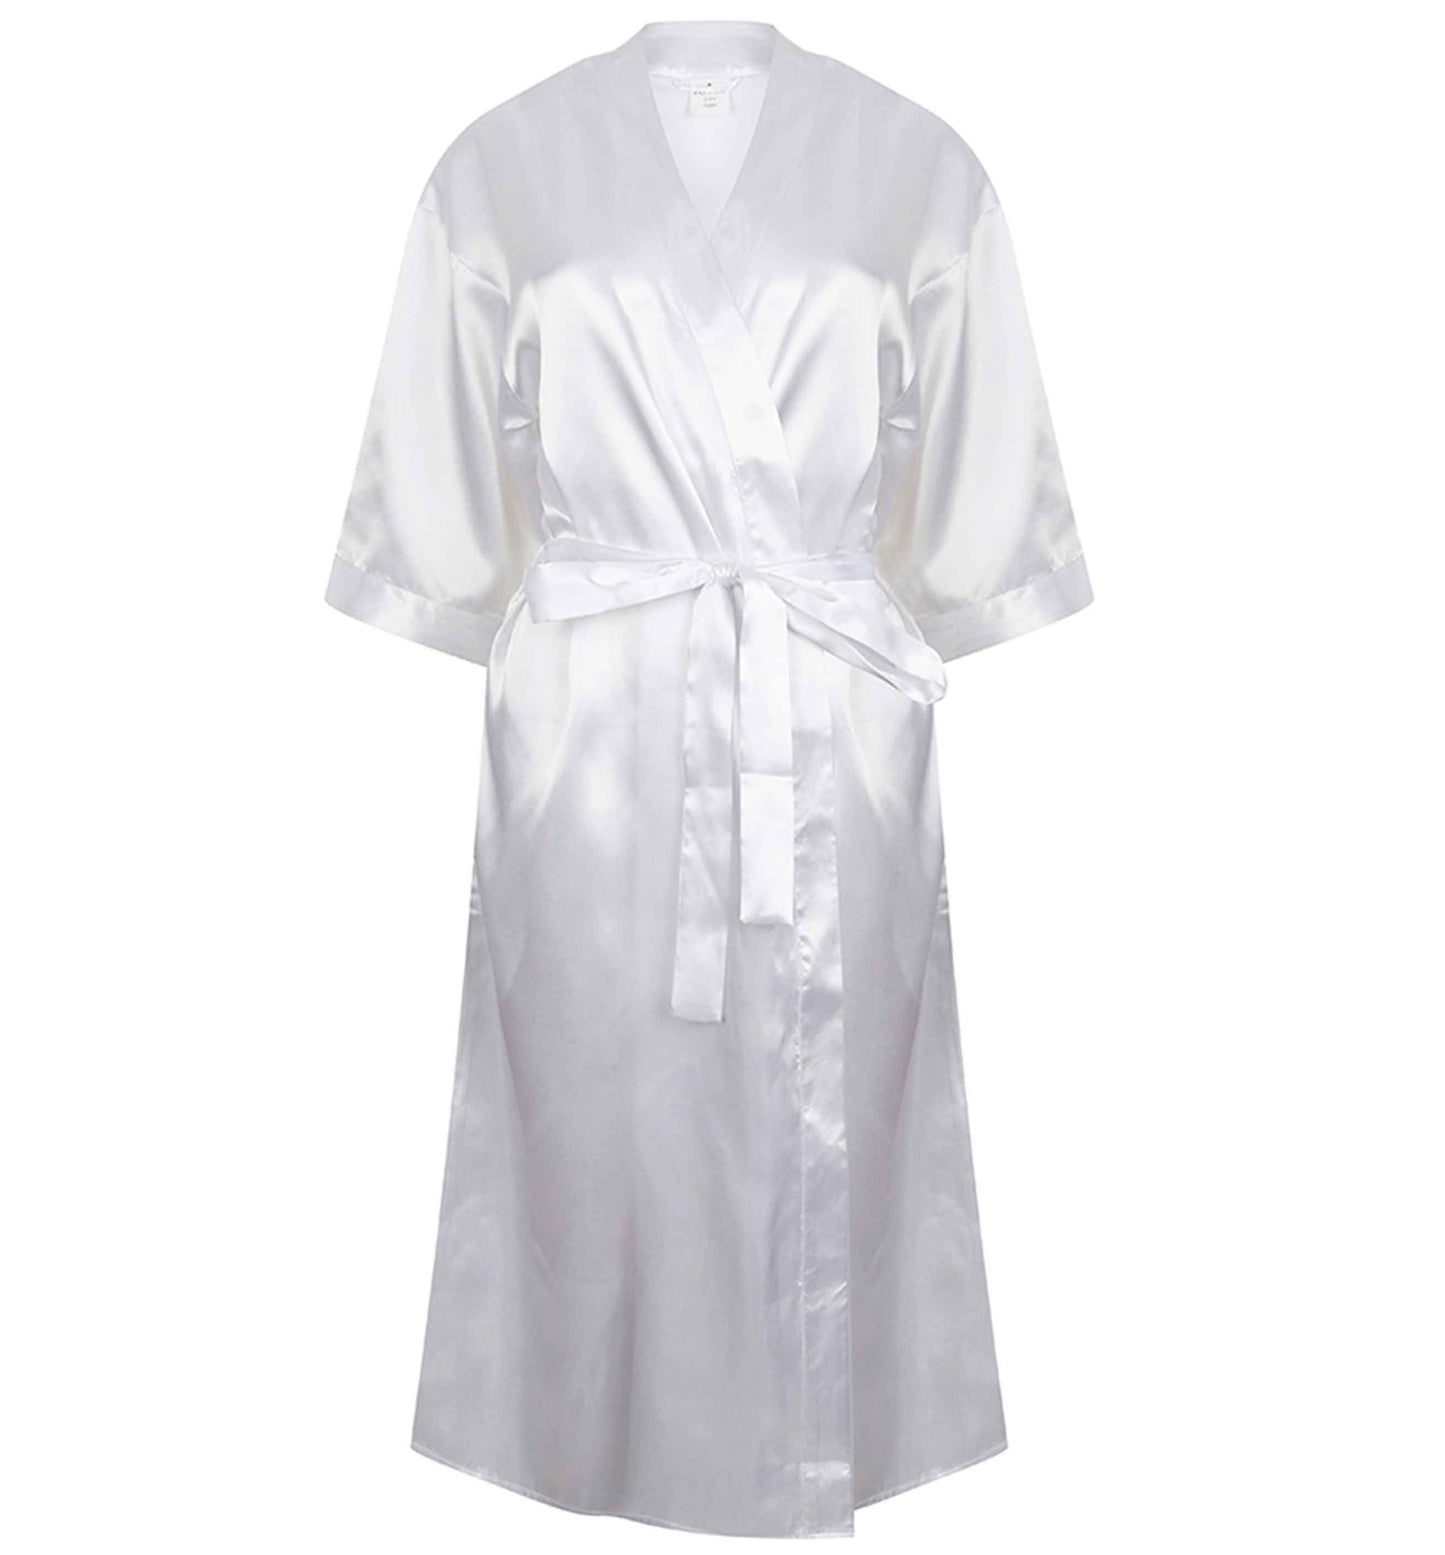 Married at sea |  8-18 | Kimono style satin robe | Ladies dressing gown